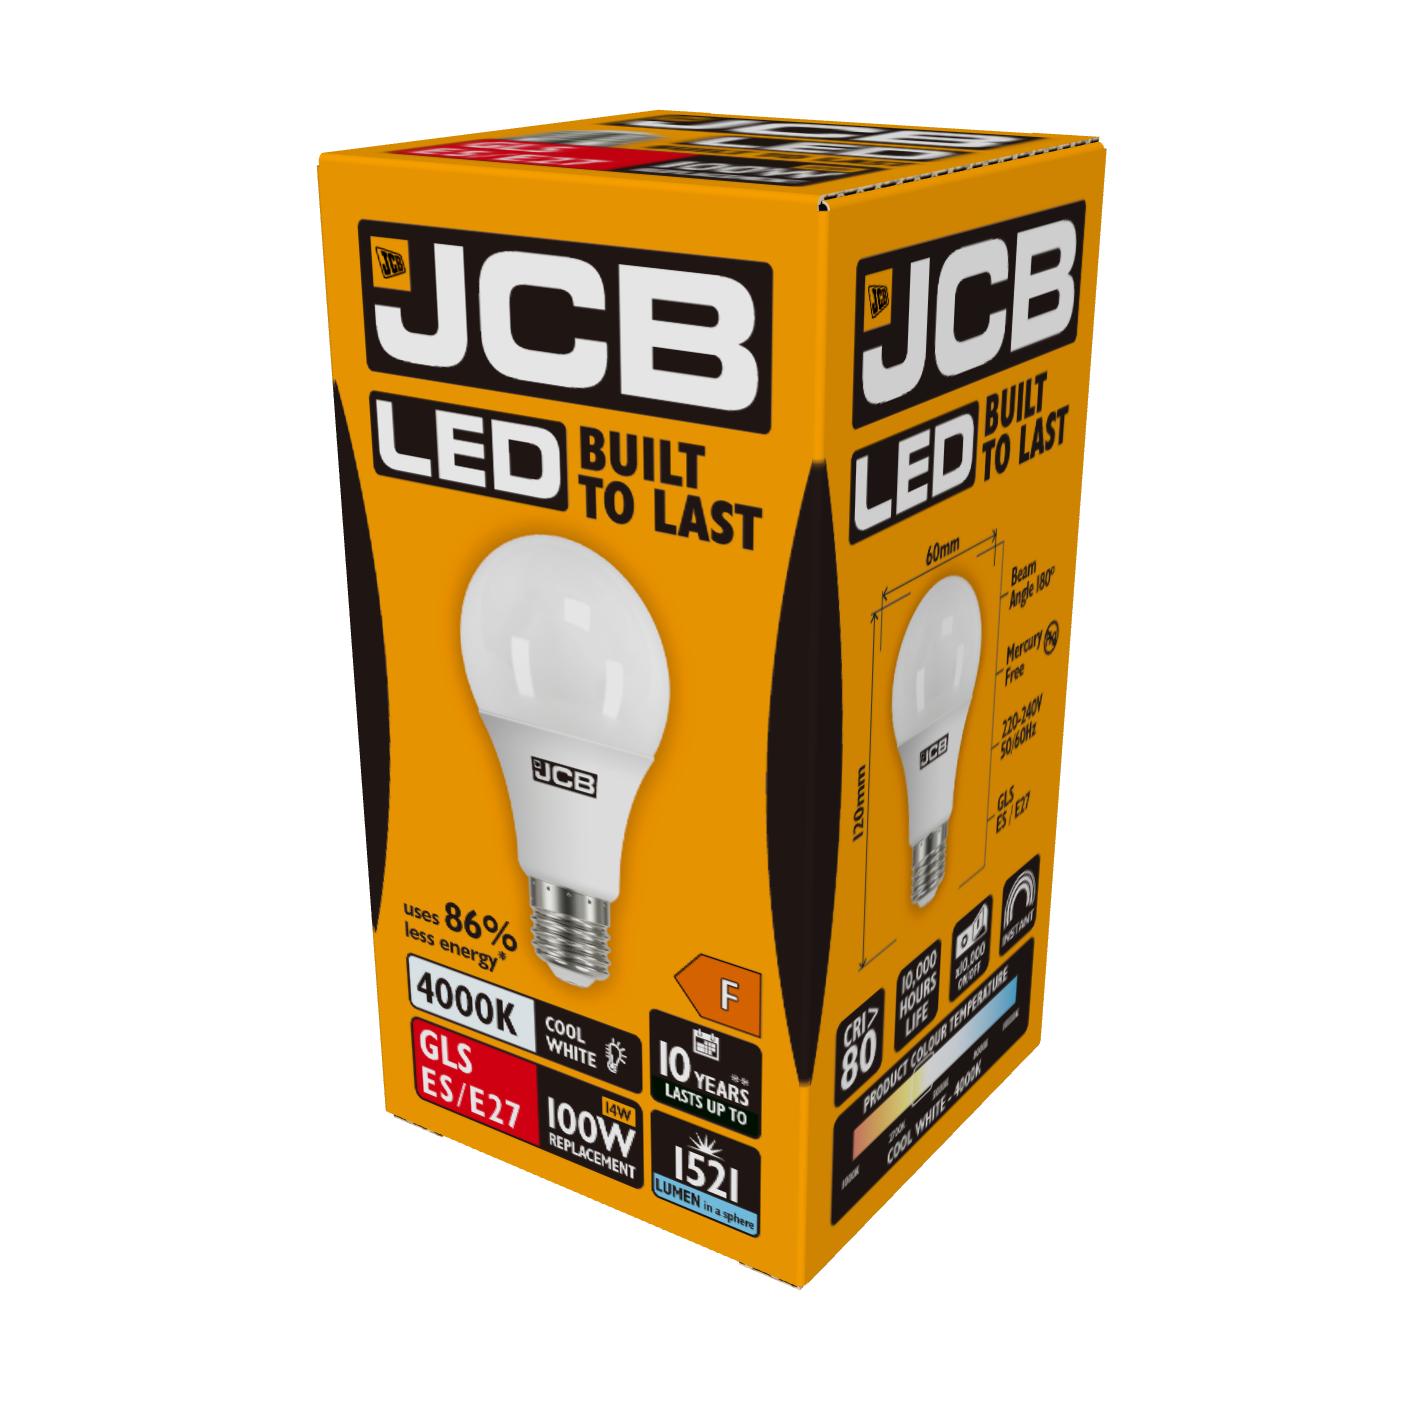 JCB LED GLS E27 (ES) 1,521lm 14W 4,000K (Cool White), Box of 1